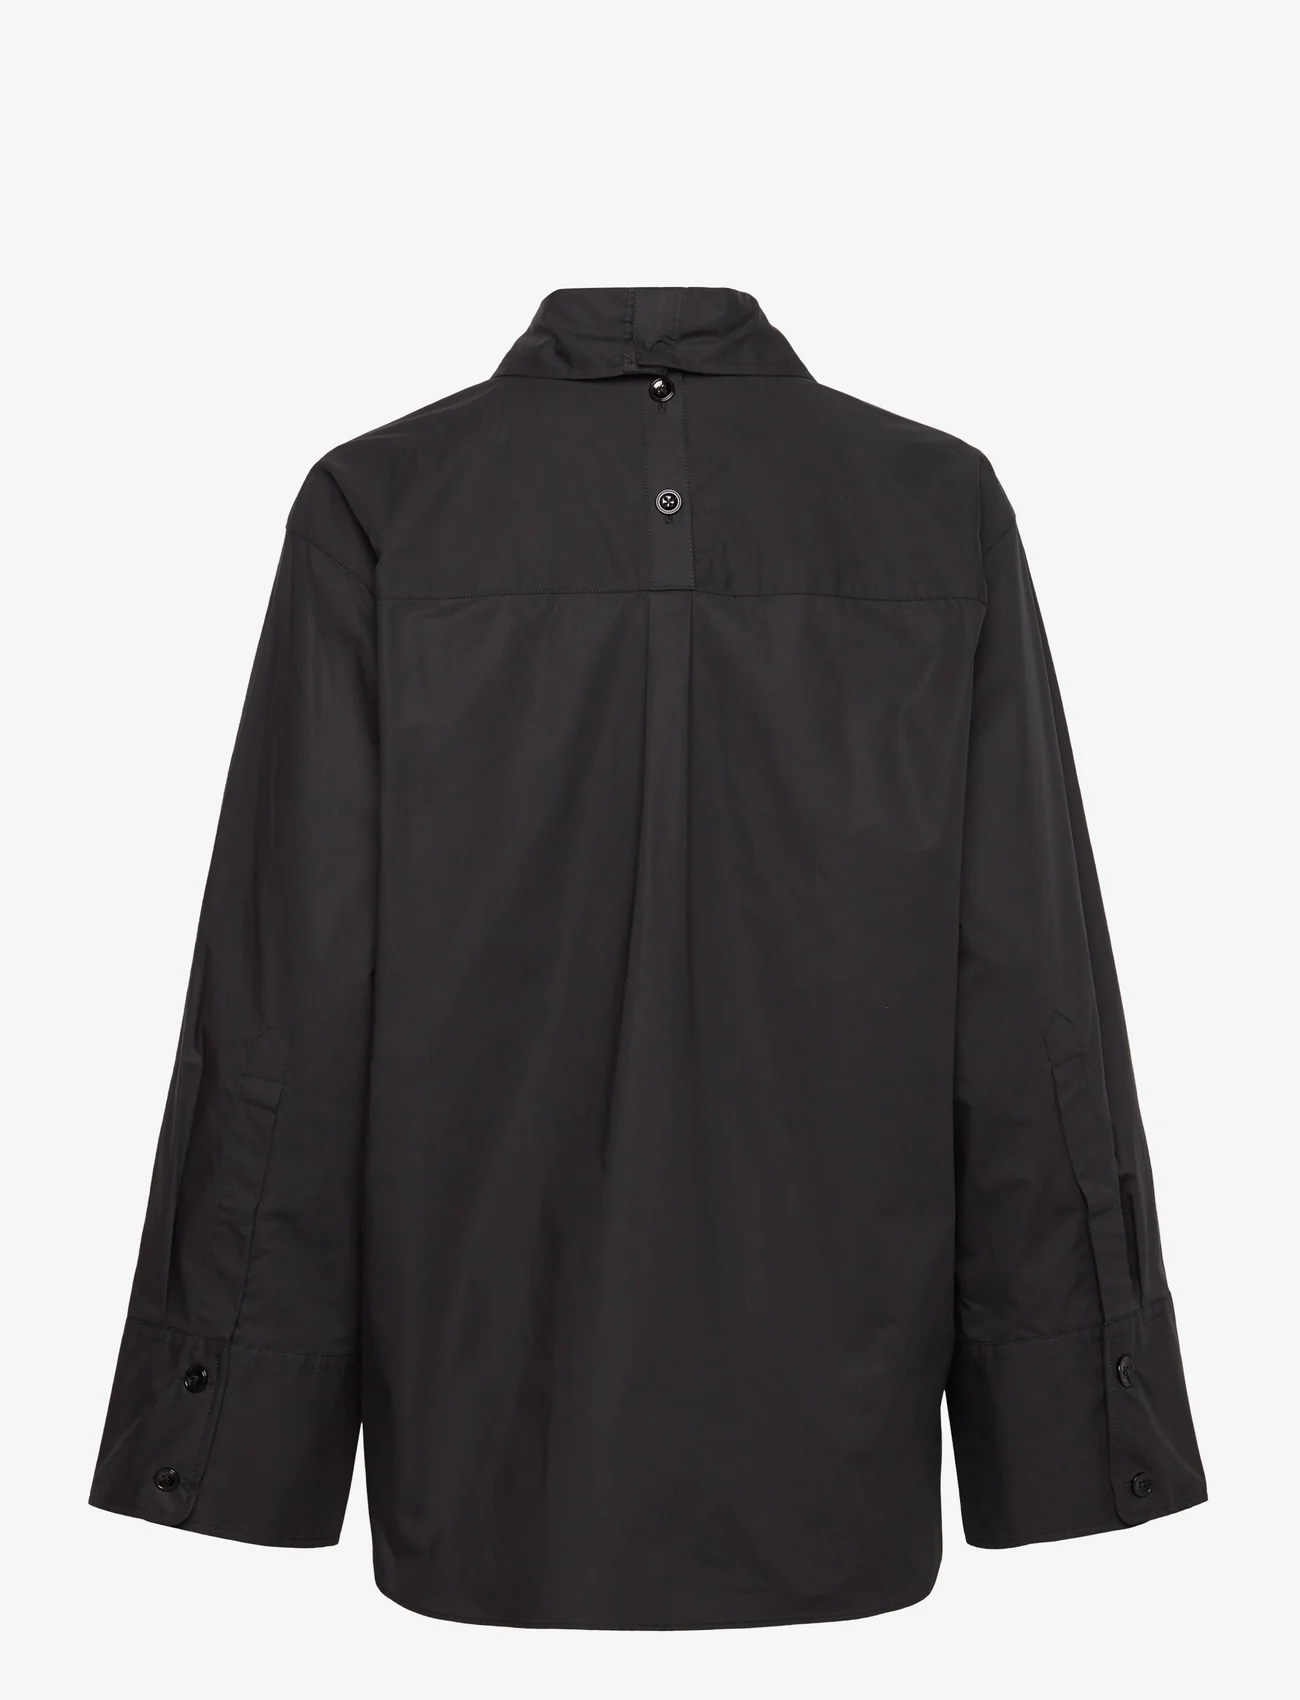 RODEBJER - Rodebjer Imola - marškiniai ilgomis rankovėmis - black - 1